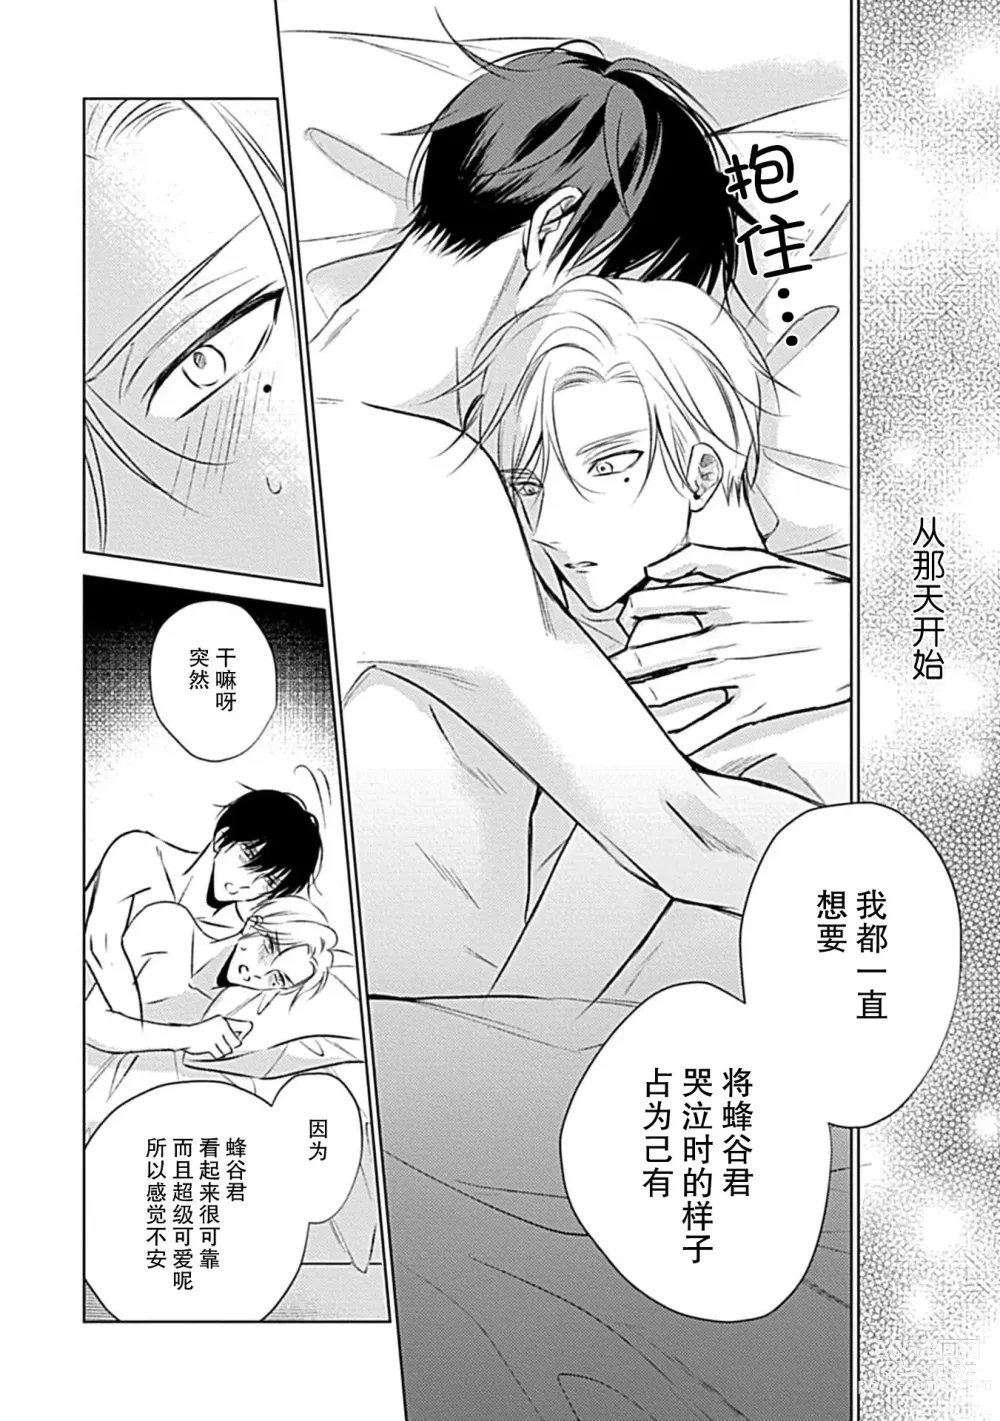 Page 154 of manga 爱哭鬼恋人的爱情法则 1-5